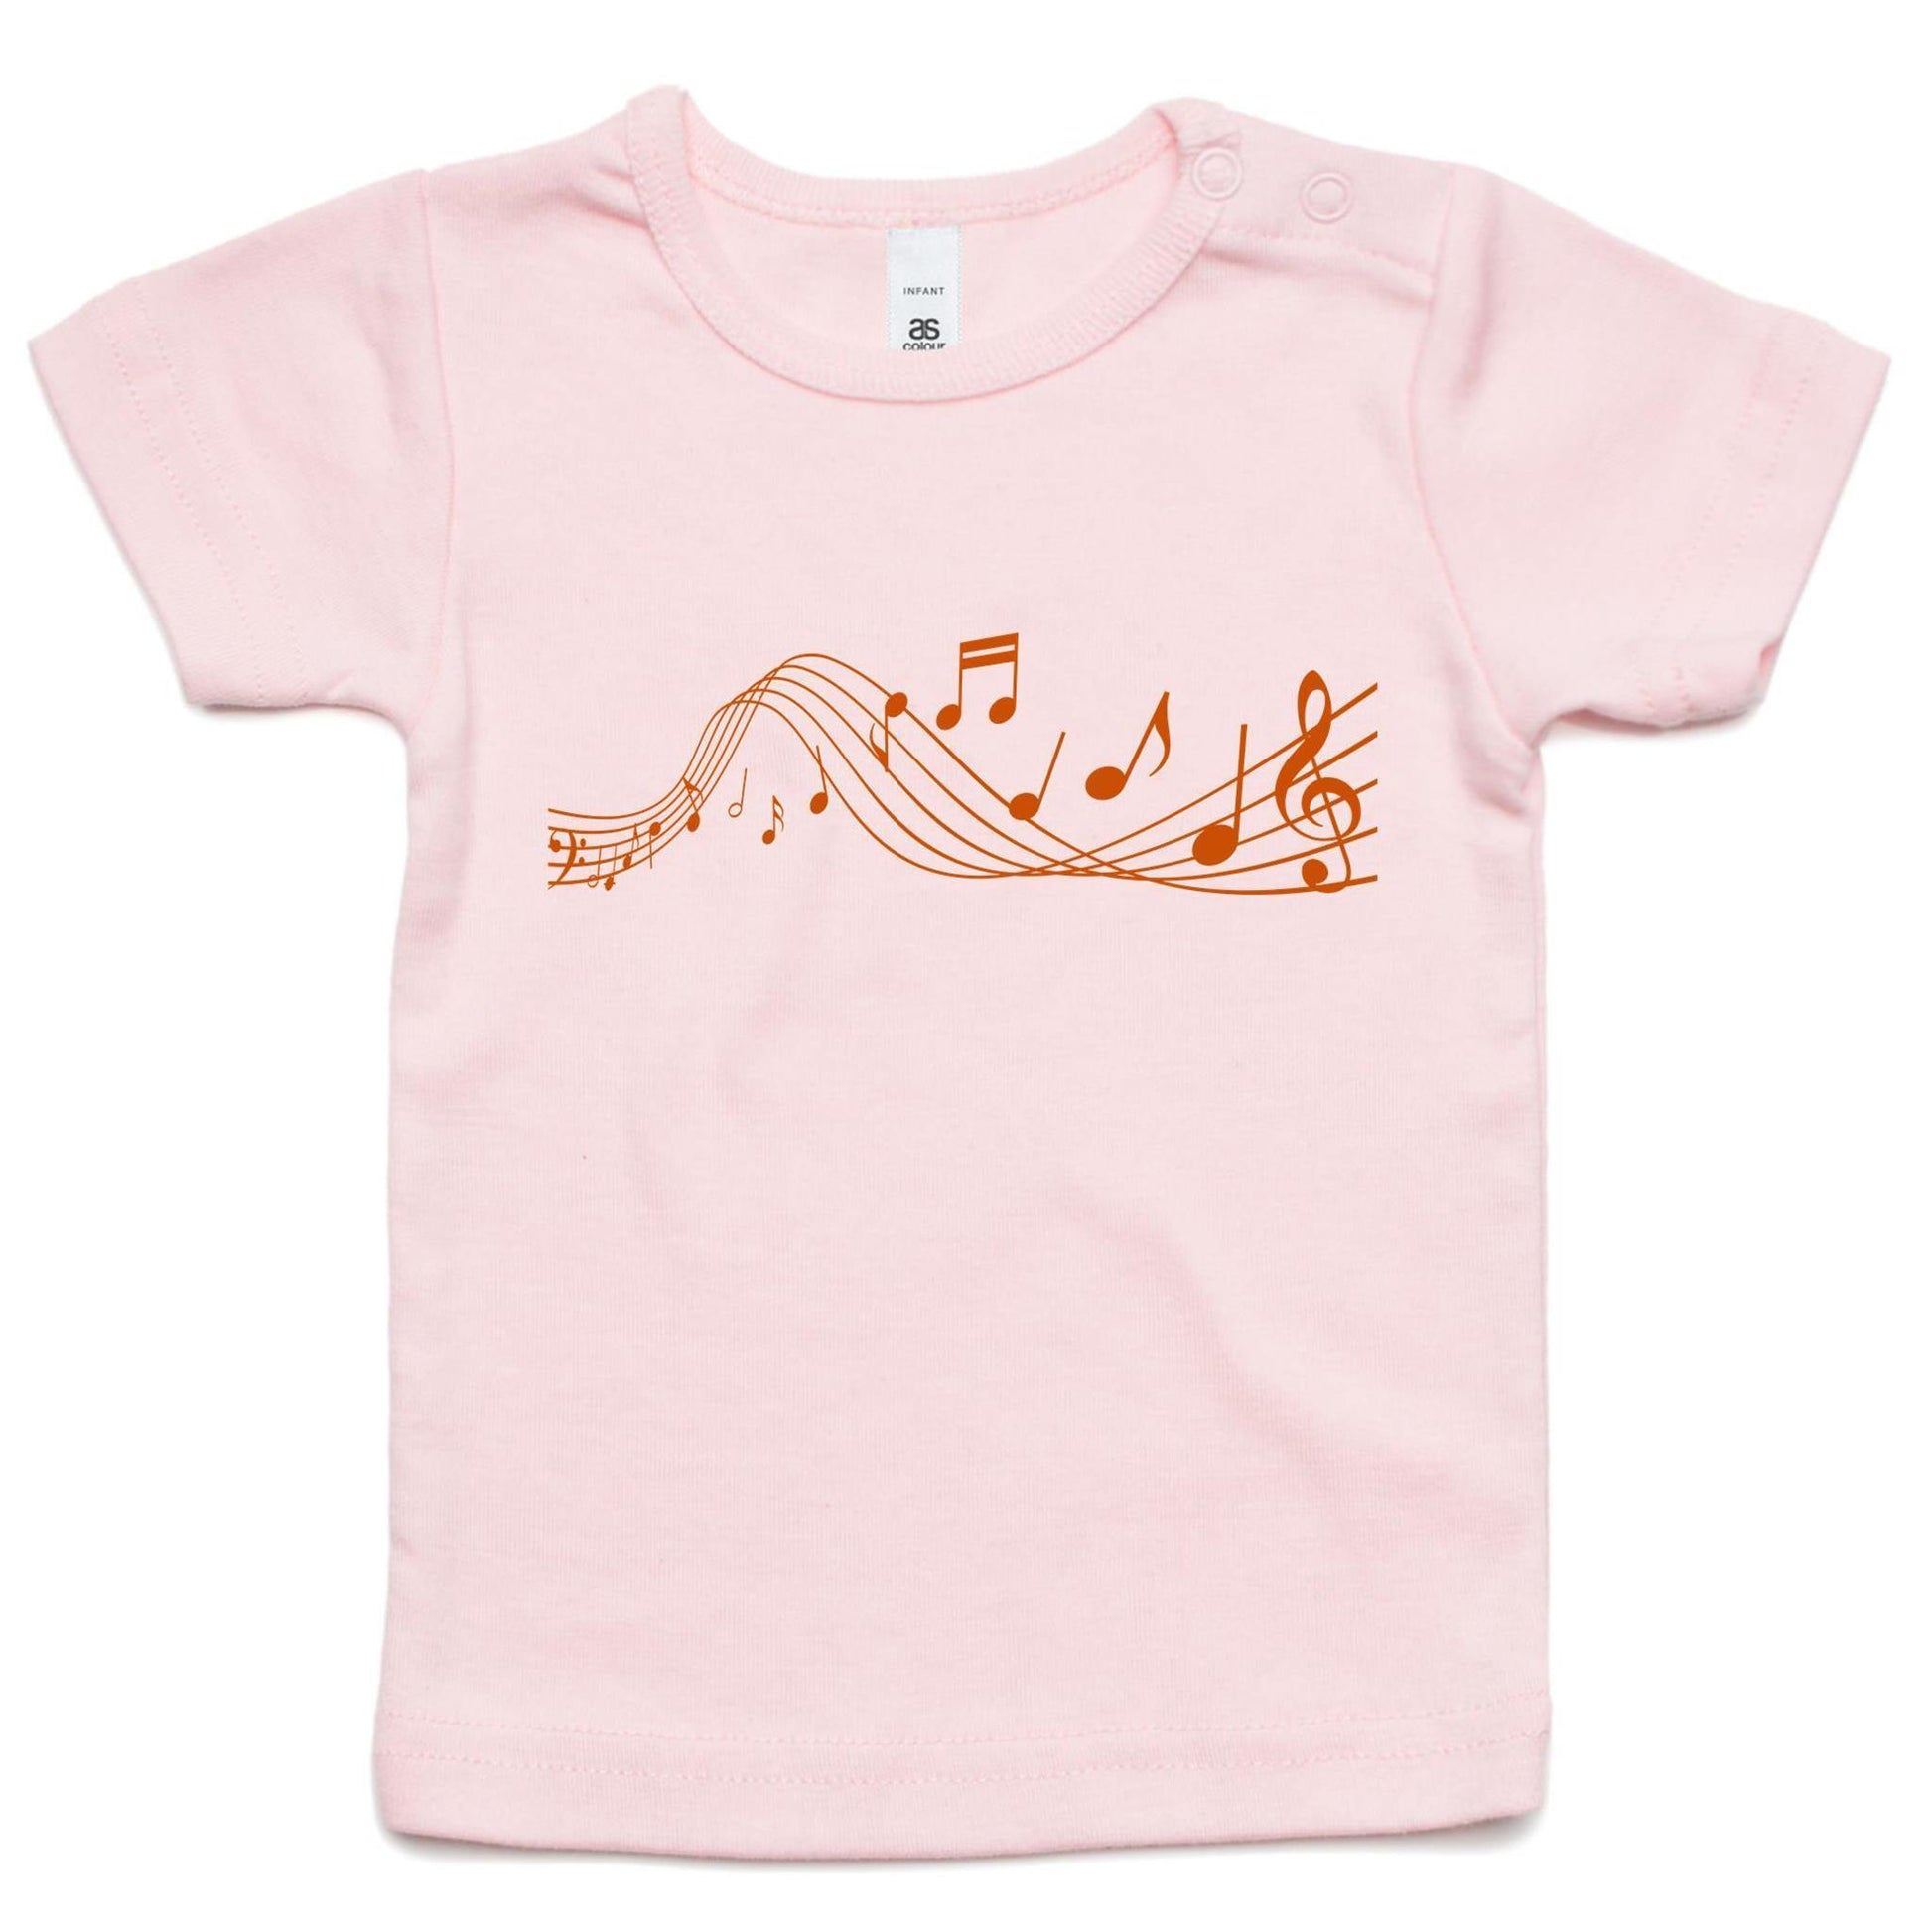 Music - Baby T-shirt Pink Baby T-shirt kids Music